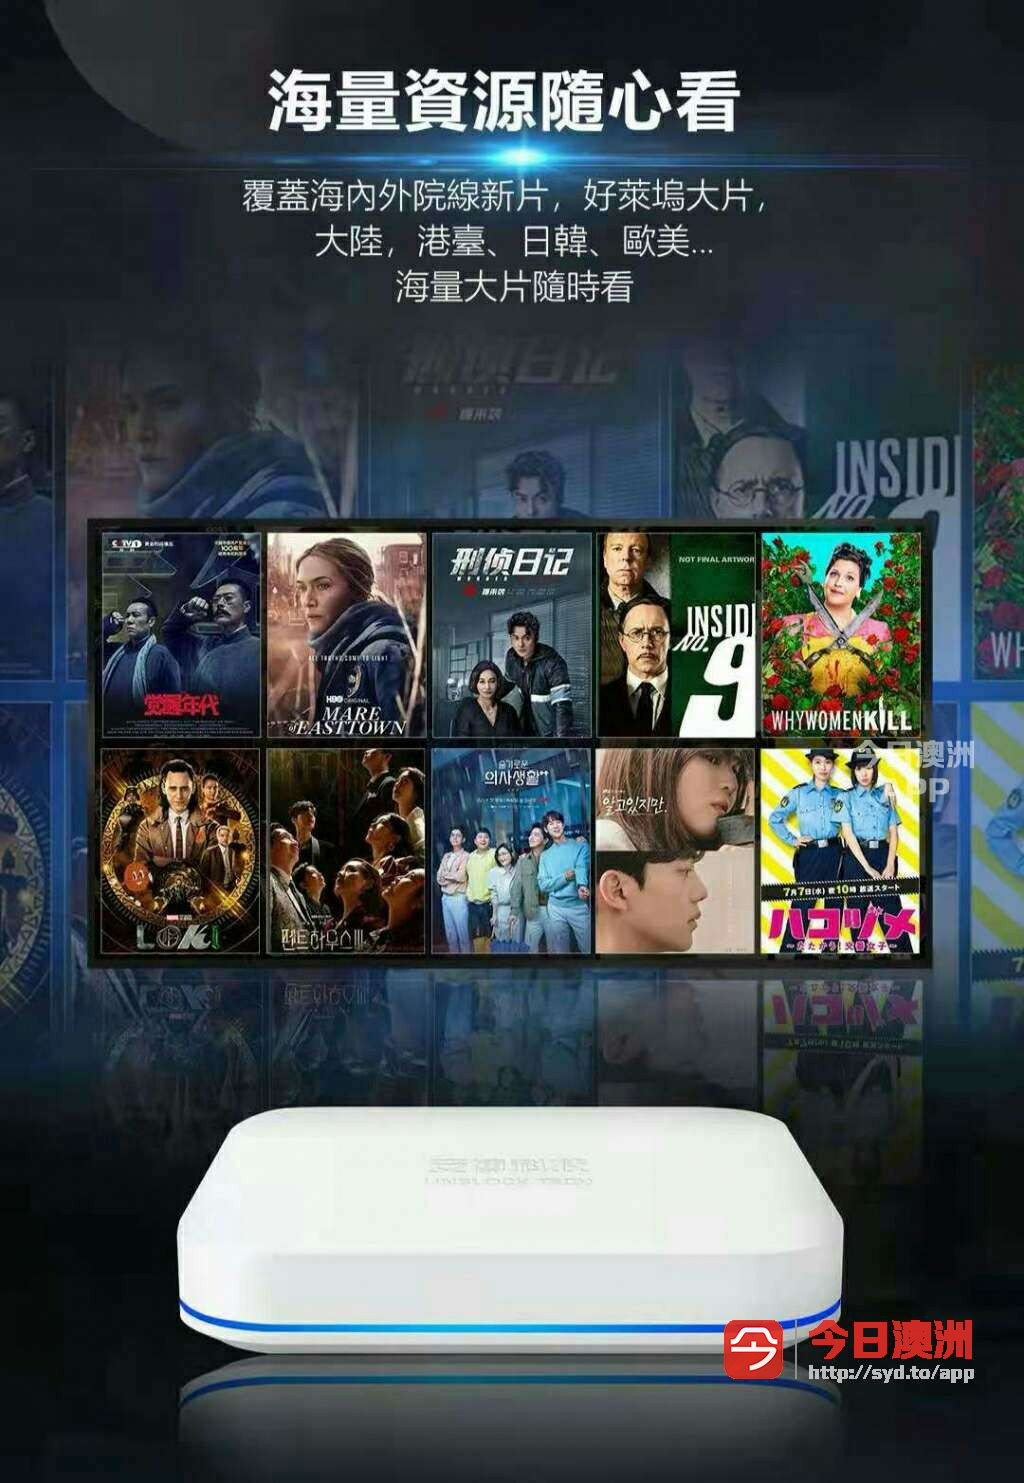 电视盒子官方中文电视安博盒子9代澳洲终身免费看中文电视伴侣神器